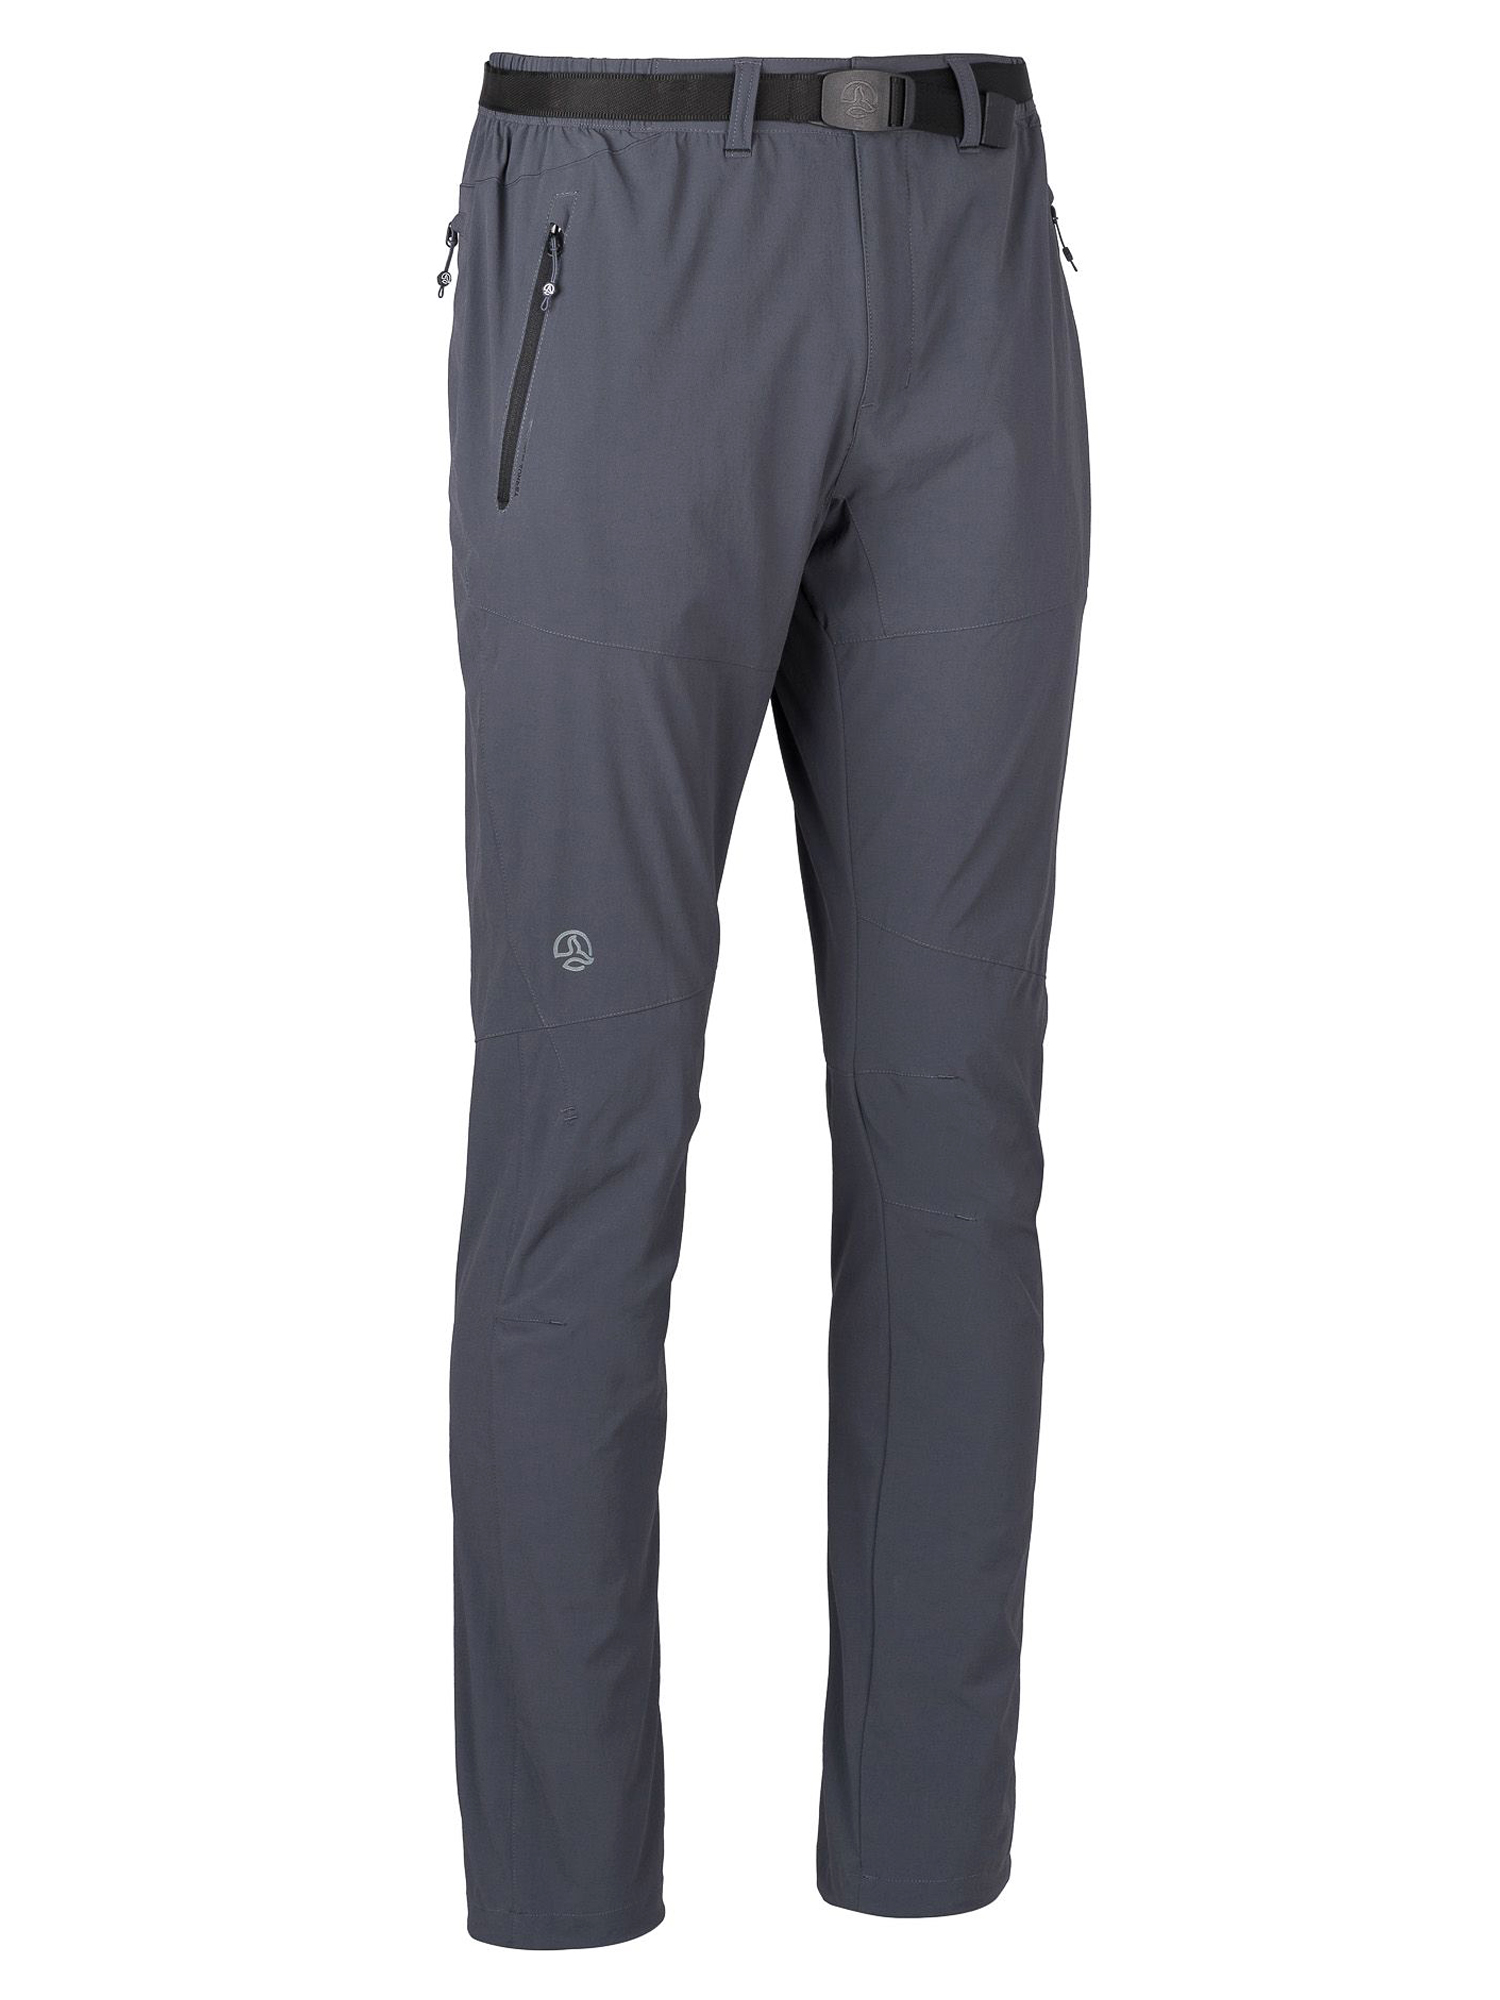 Спортивные брюки мужские Ternua Friz Pt M серые XL